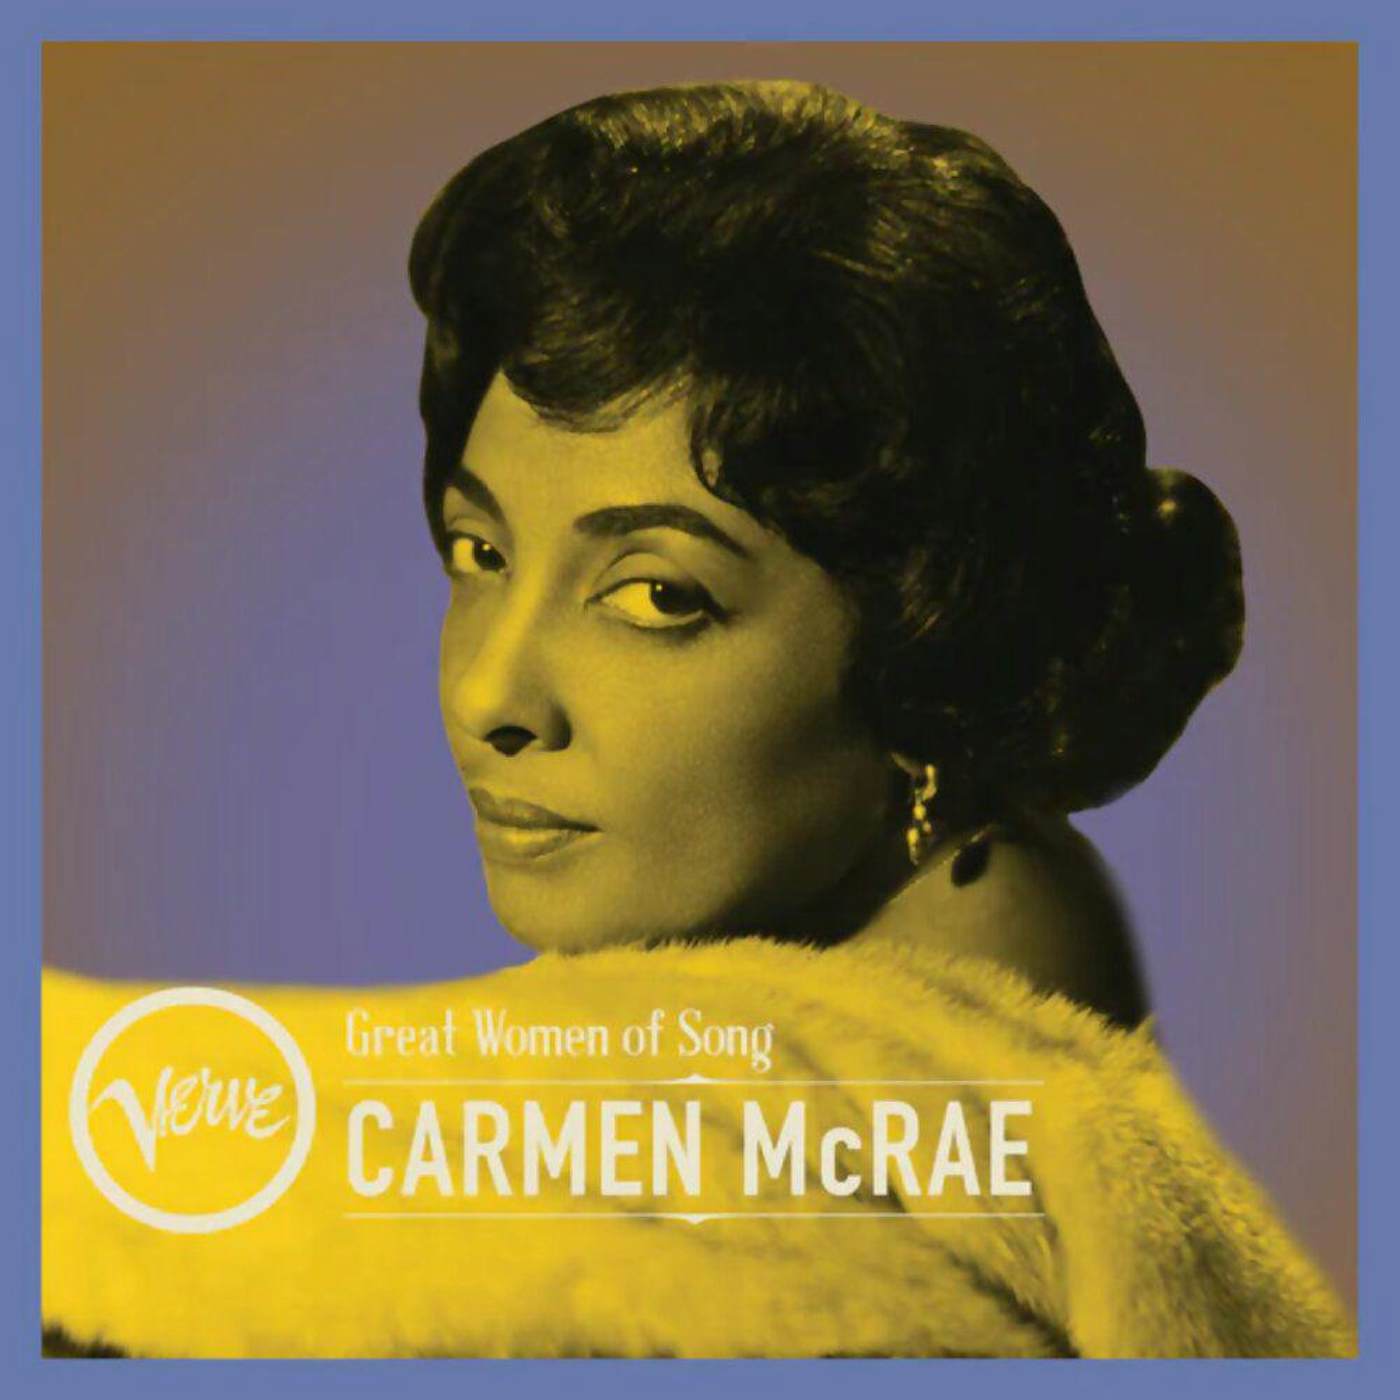 CARMEN MCRAE - Great Women of Song: Carmen McRae